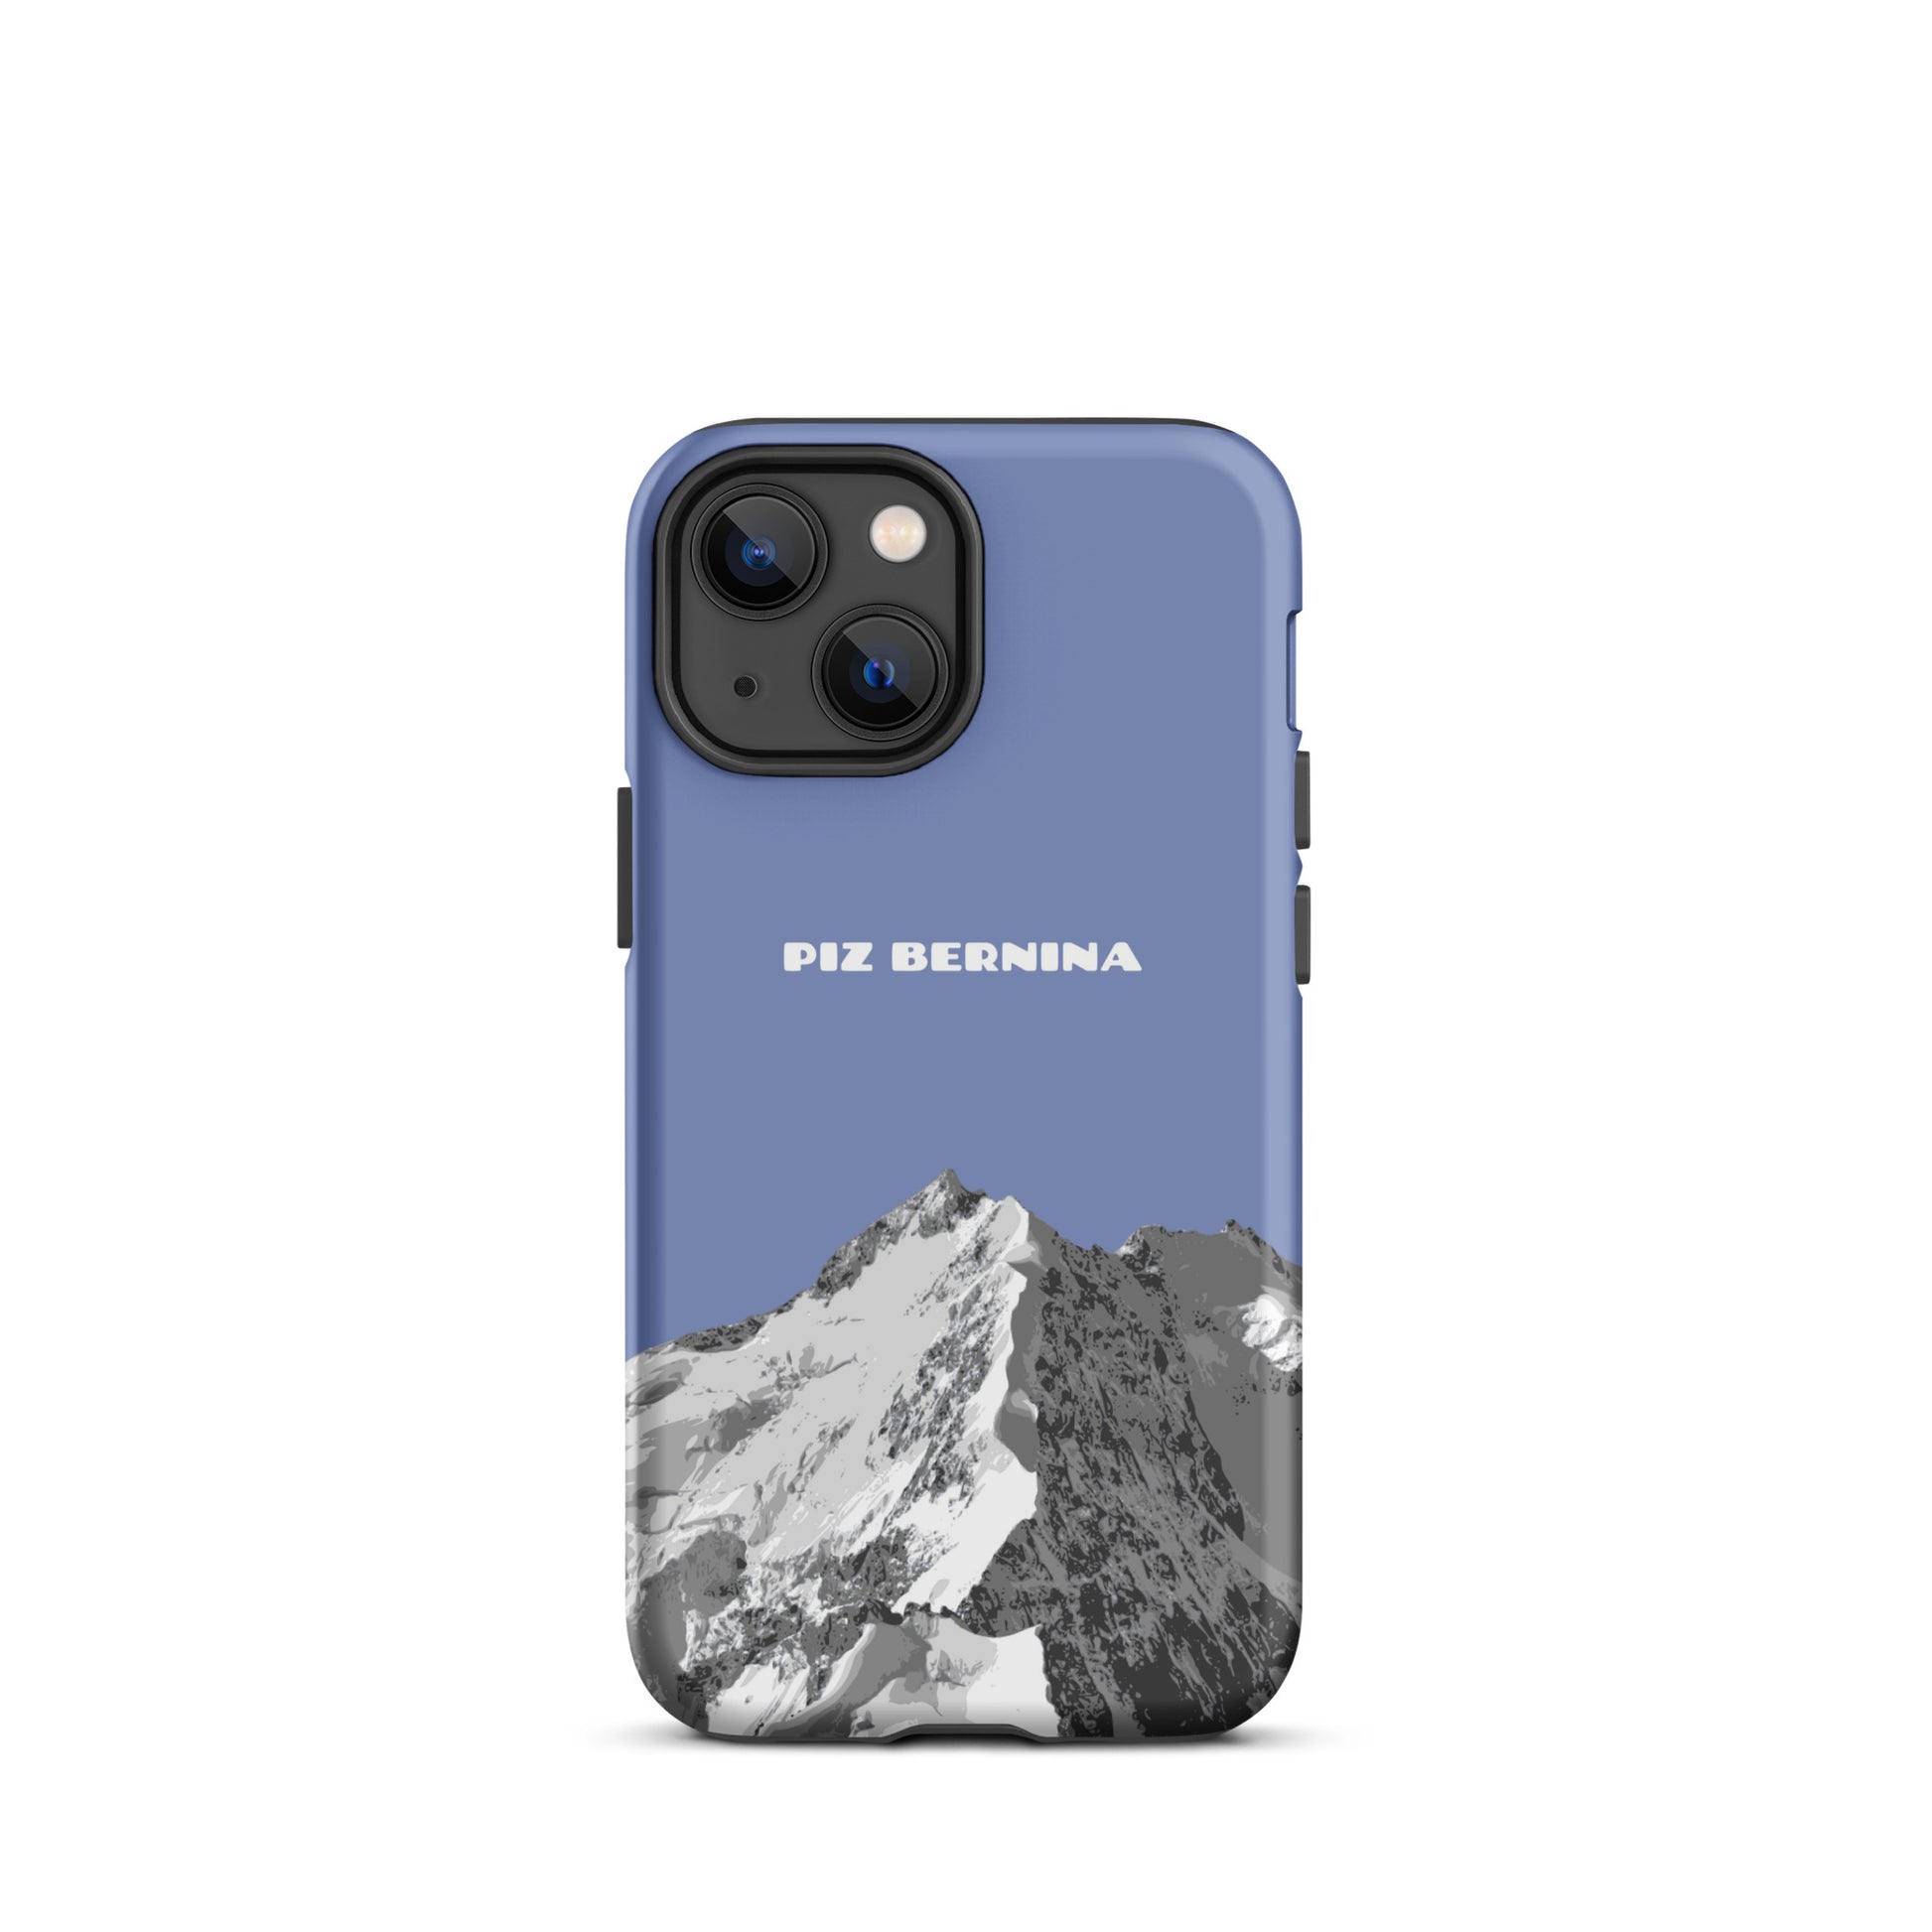 Hülle für das iPhone 13 Mini von Apple in der Farbe Pastellblau, dass den Piz Bernina in Graubünden zeigt.